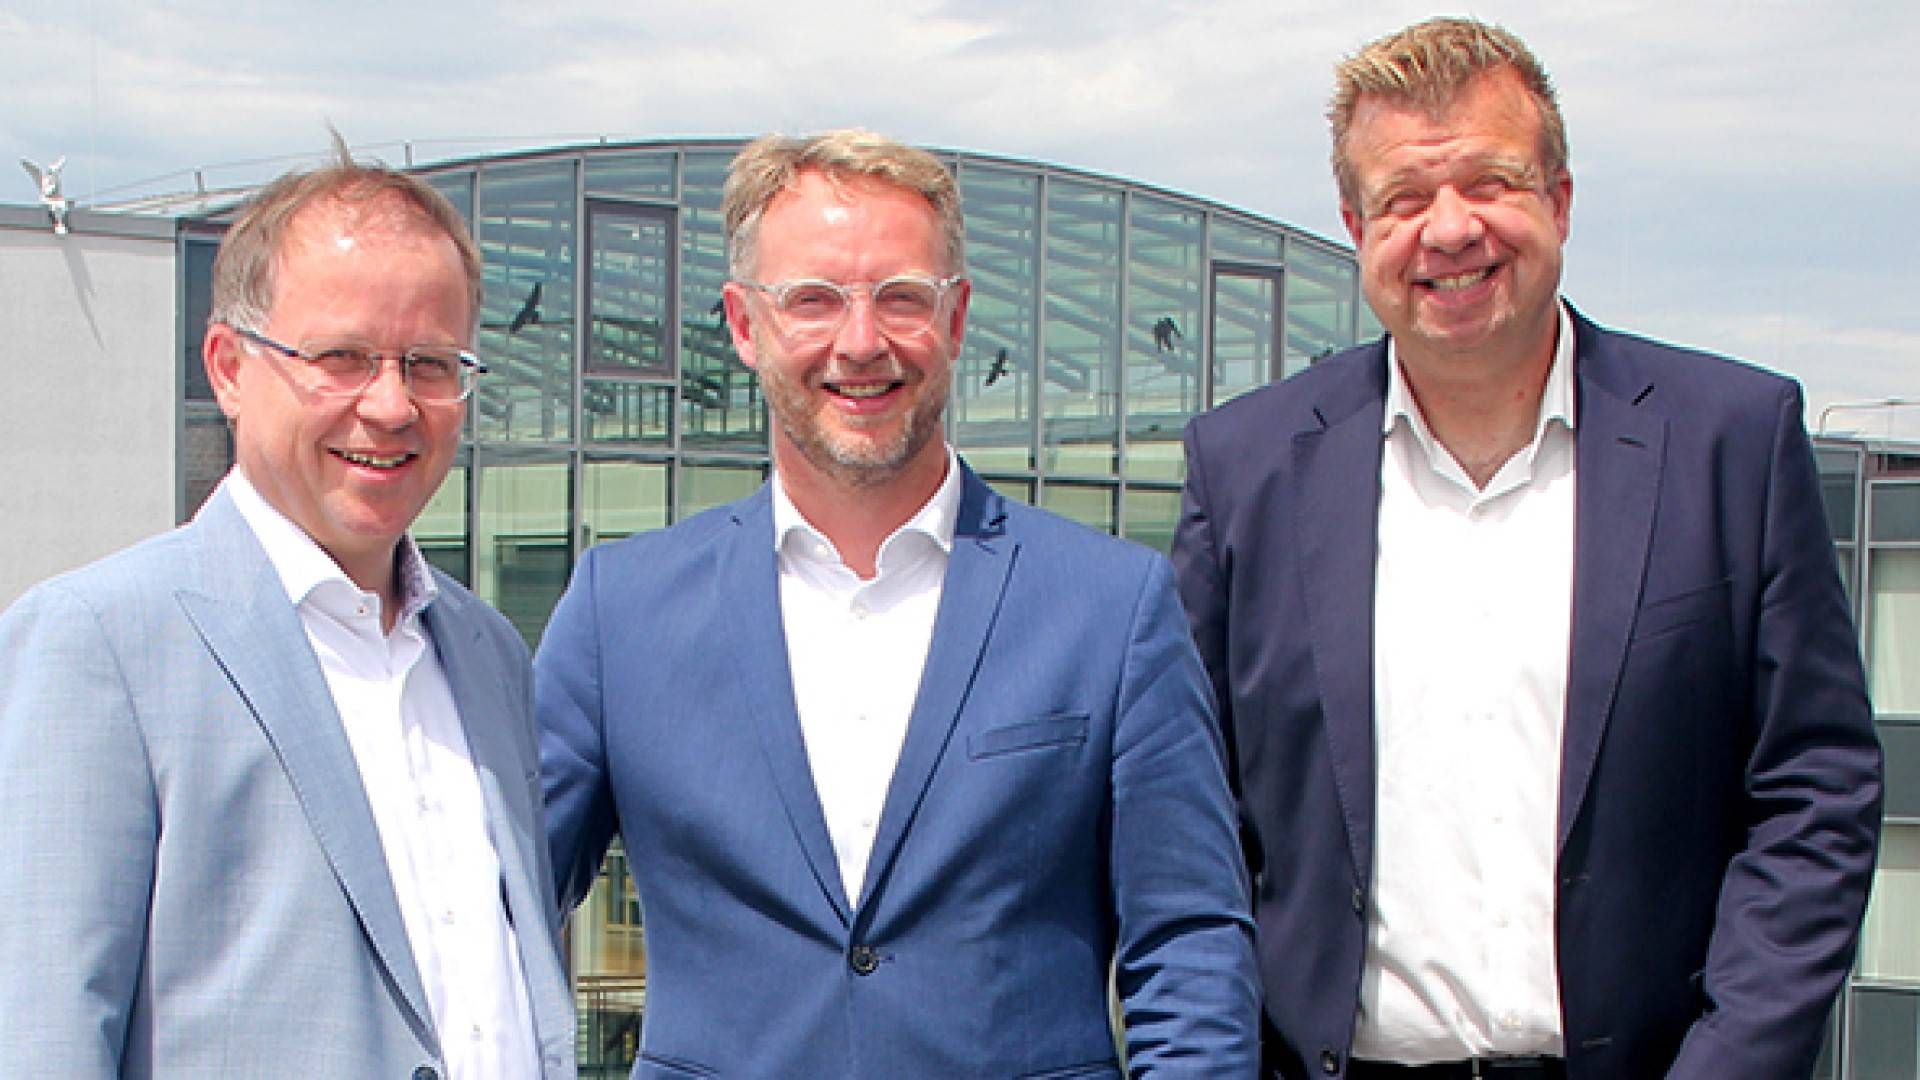 Vorstandssprecher Lars Witteck (r.) präsentiert die neuen Bankdirektoren, Martin Frettlöh (l.) und Michael Müller (m.) | Foto: Voba Mittelhessen